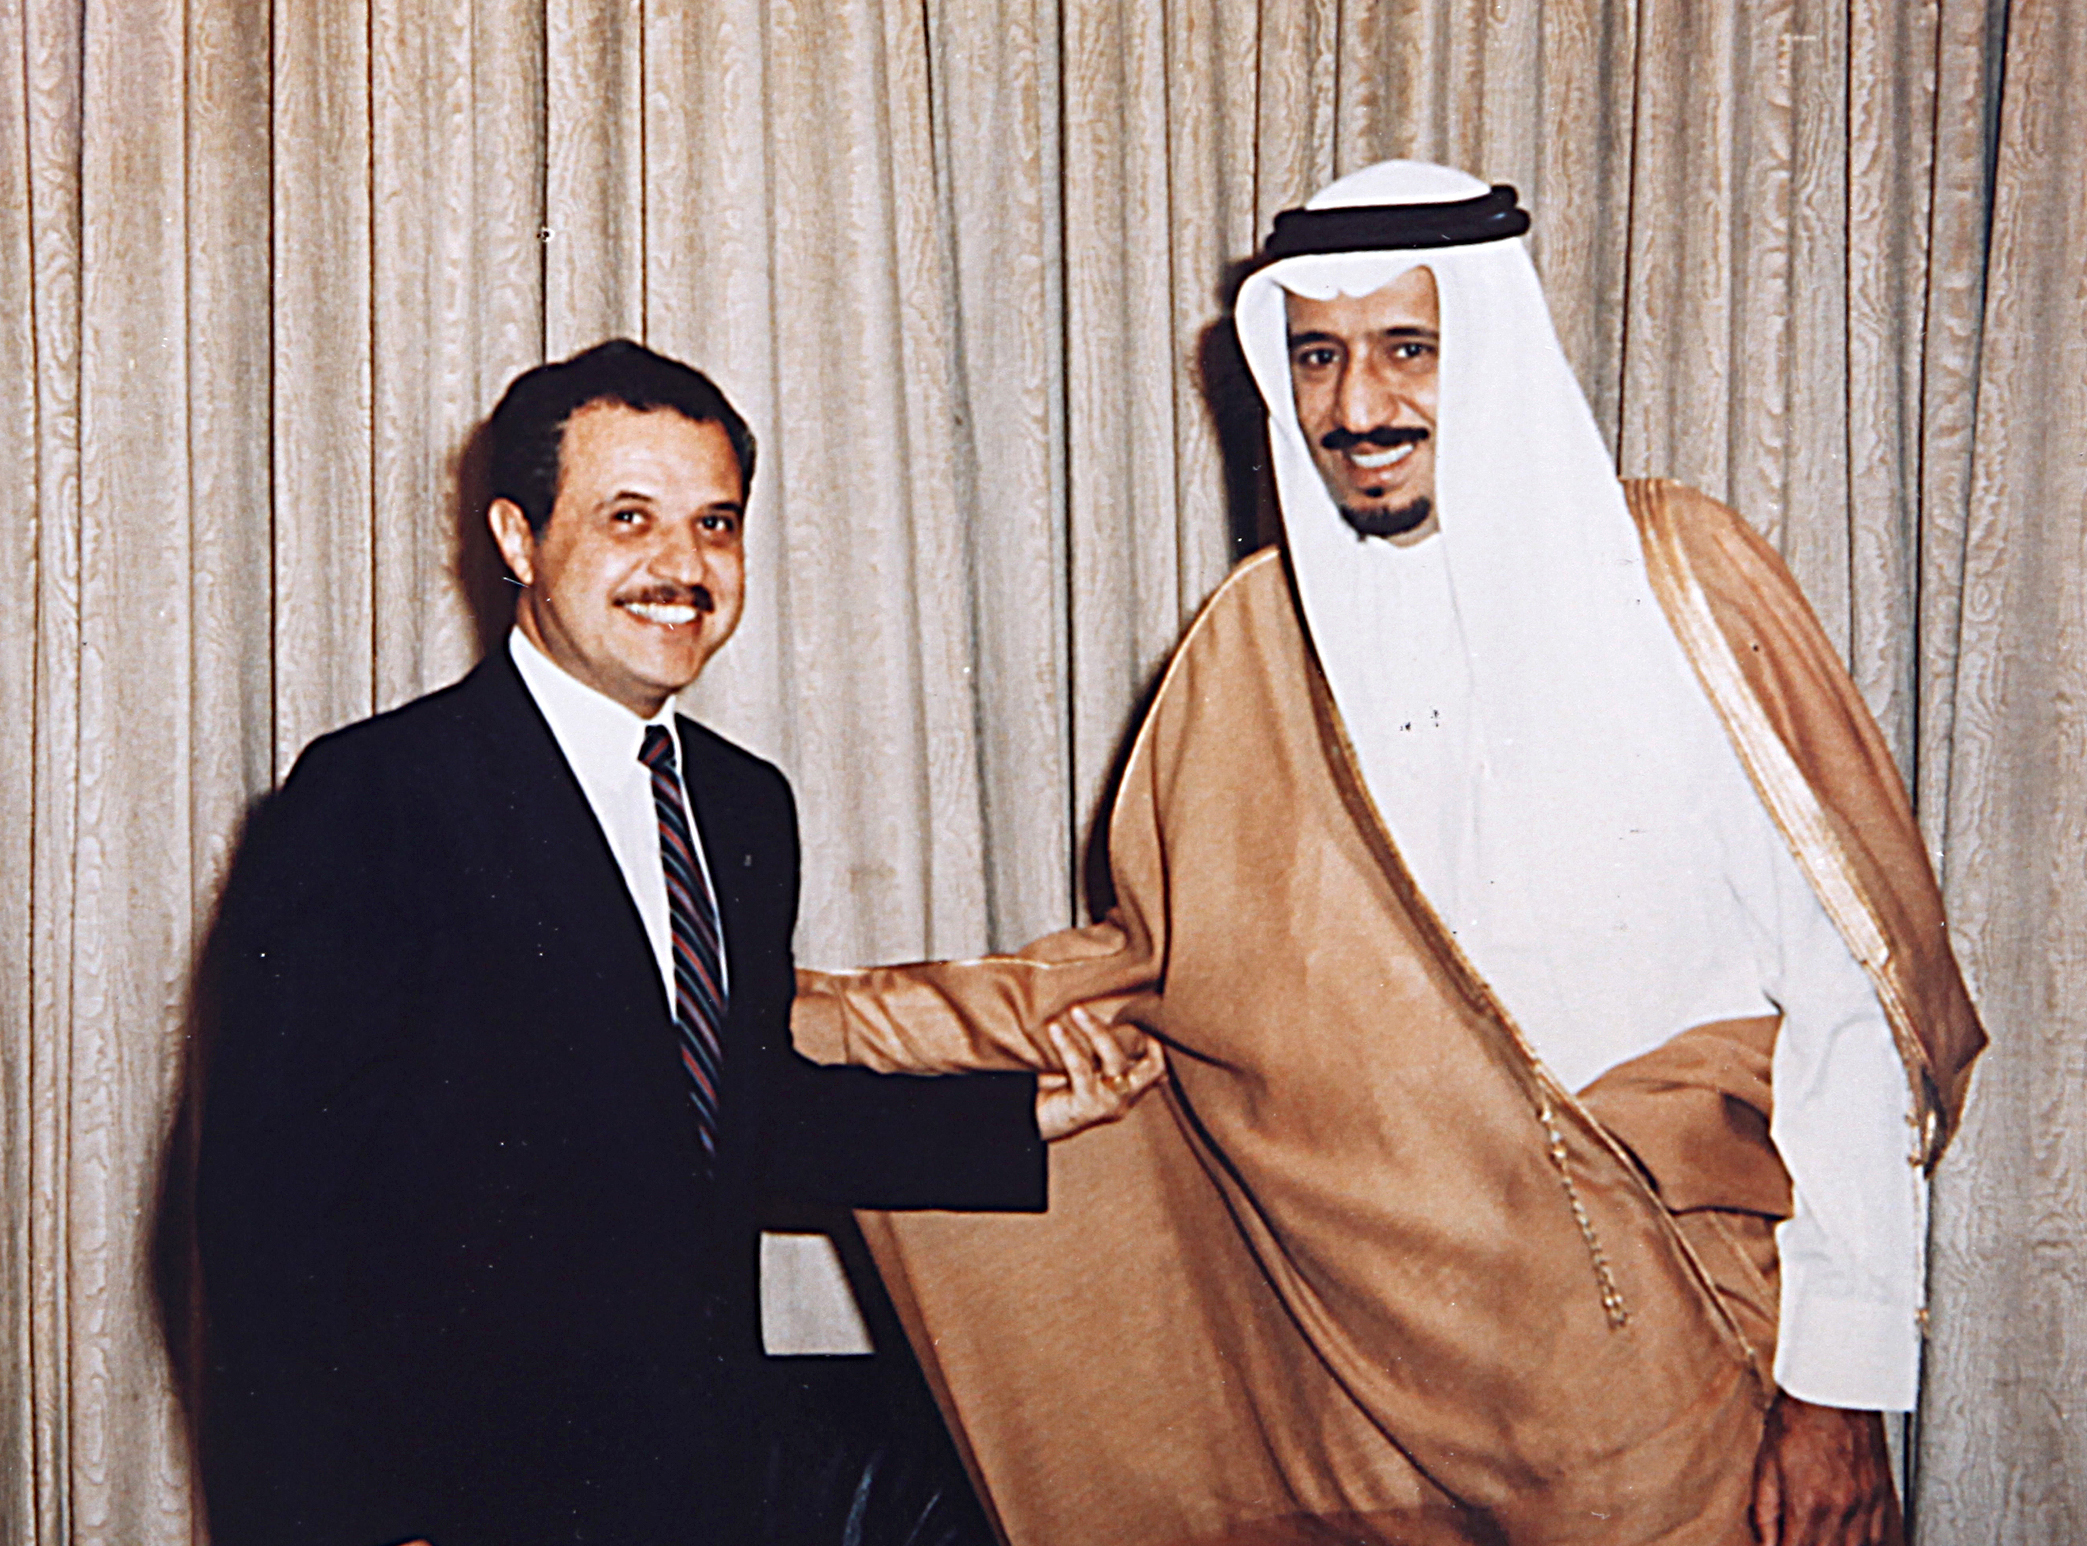 صور الملك سلمان بن عبد العزيز